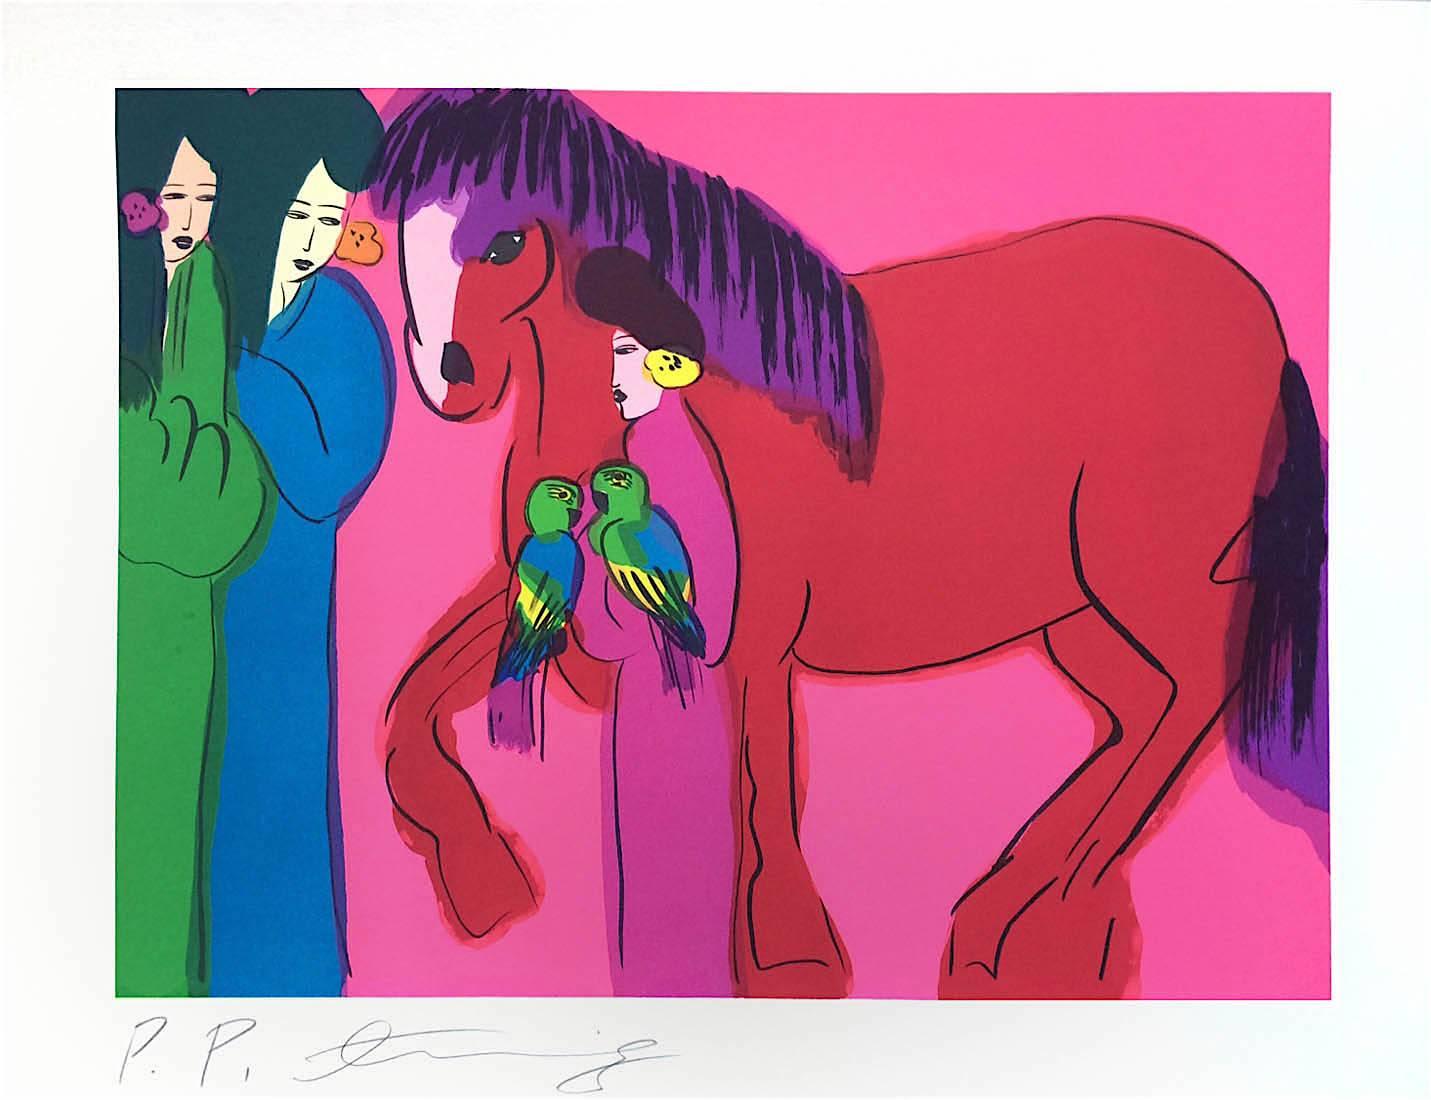 RED HORSE on HOT PINK THREE GEISHAS ist eine Original-Lithografie auf Somerset-Papier, 100% säurefrei, des renommierten chinesischen Künstlers Walasse Ting (DING XIONGQUAN, Chinese, 1929-2010). Tings Verwendung kräftiger Farben und ausdrucksstarker